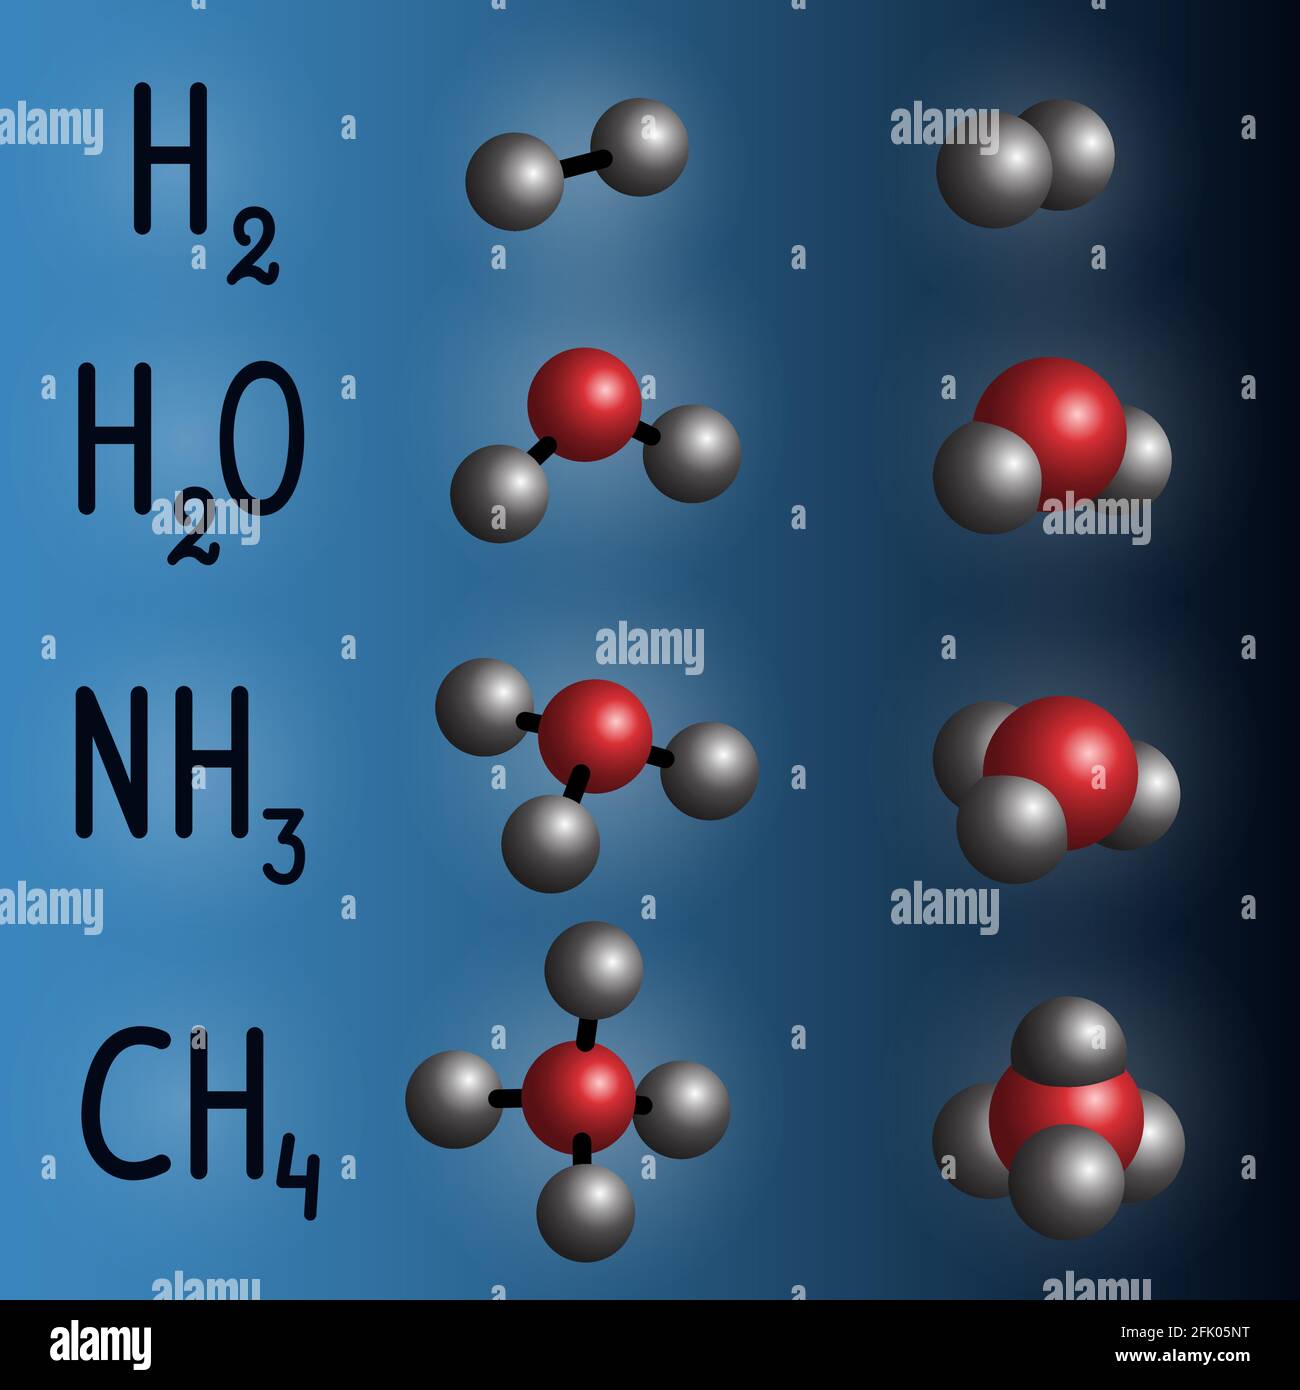 Chemische Formel und Molekülmodell von Wasserstoff, Wasser, Ammoniak,  Methan auf dunkelblauem Hintergrund Stock-Vektorgrafik - Alamy